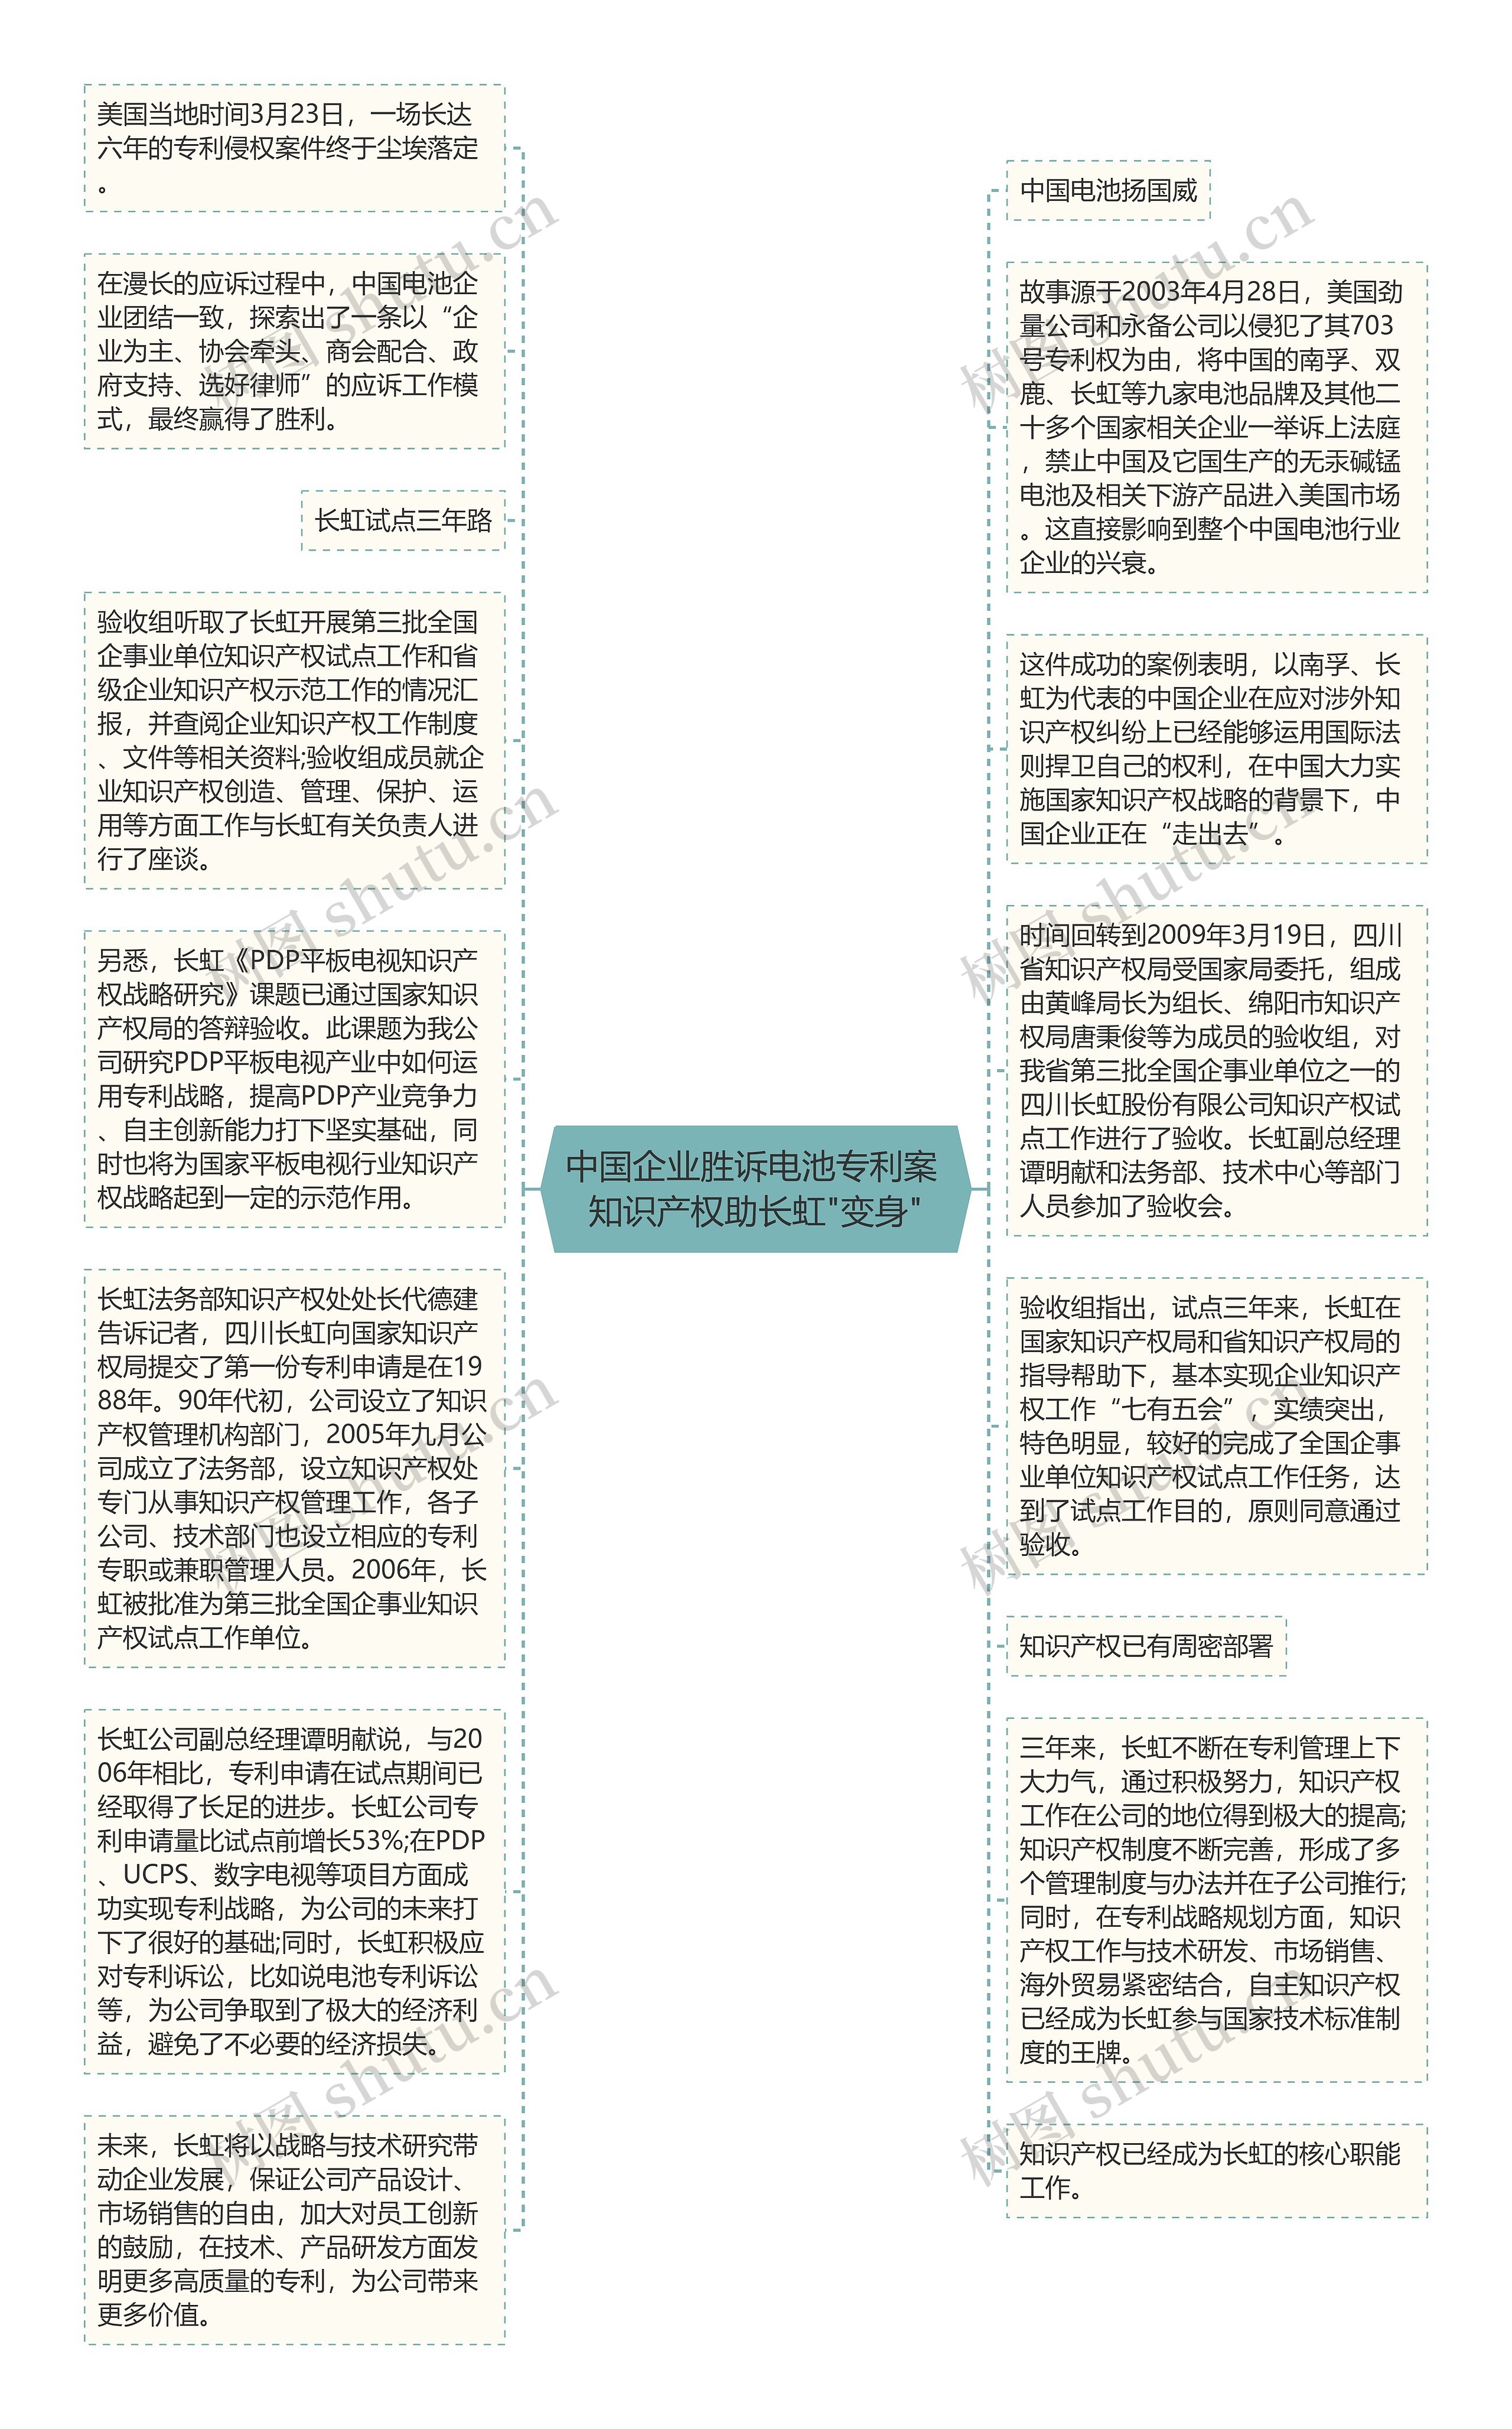 中国企业胜诉电池专利案 知识产权助长虹"变身"